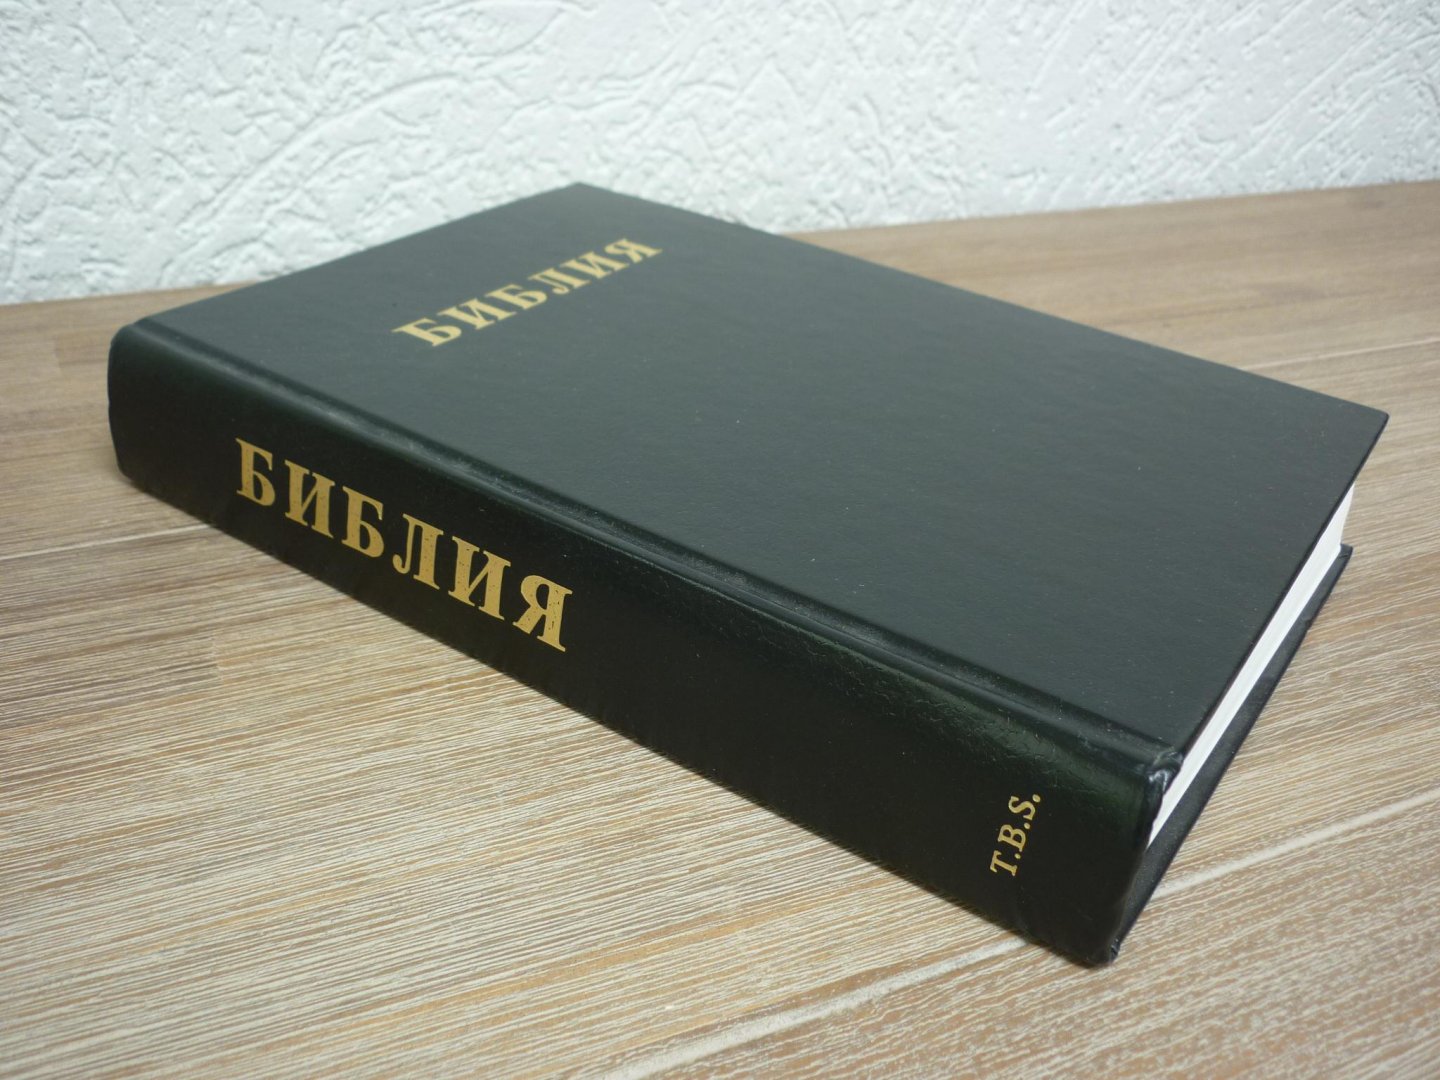  - Russchische Bijbel in een uitgave van Trinitarian Bible Society.